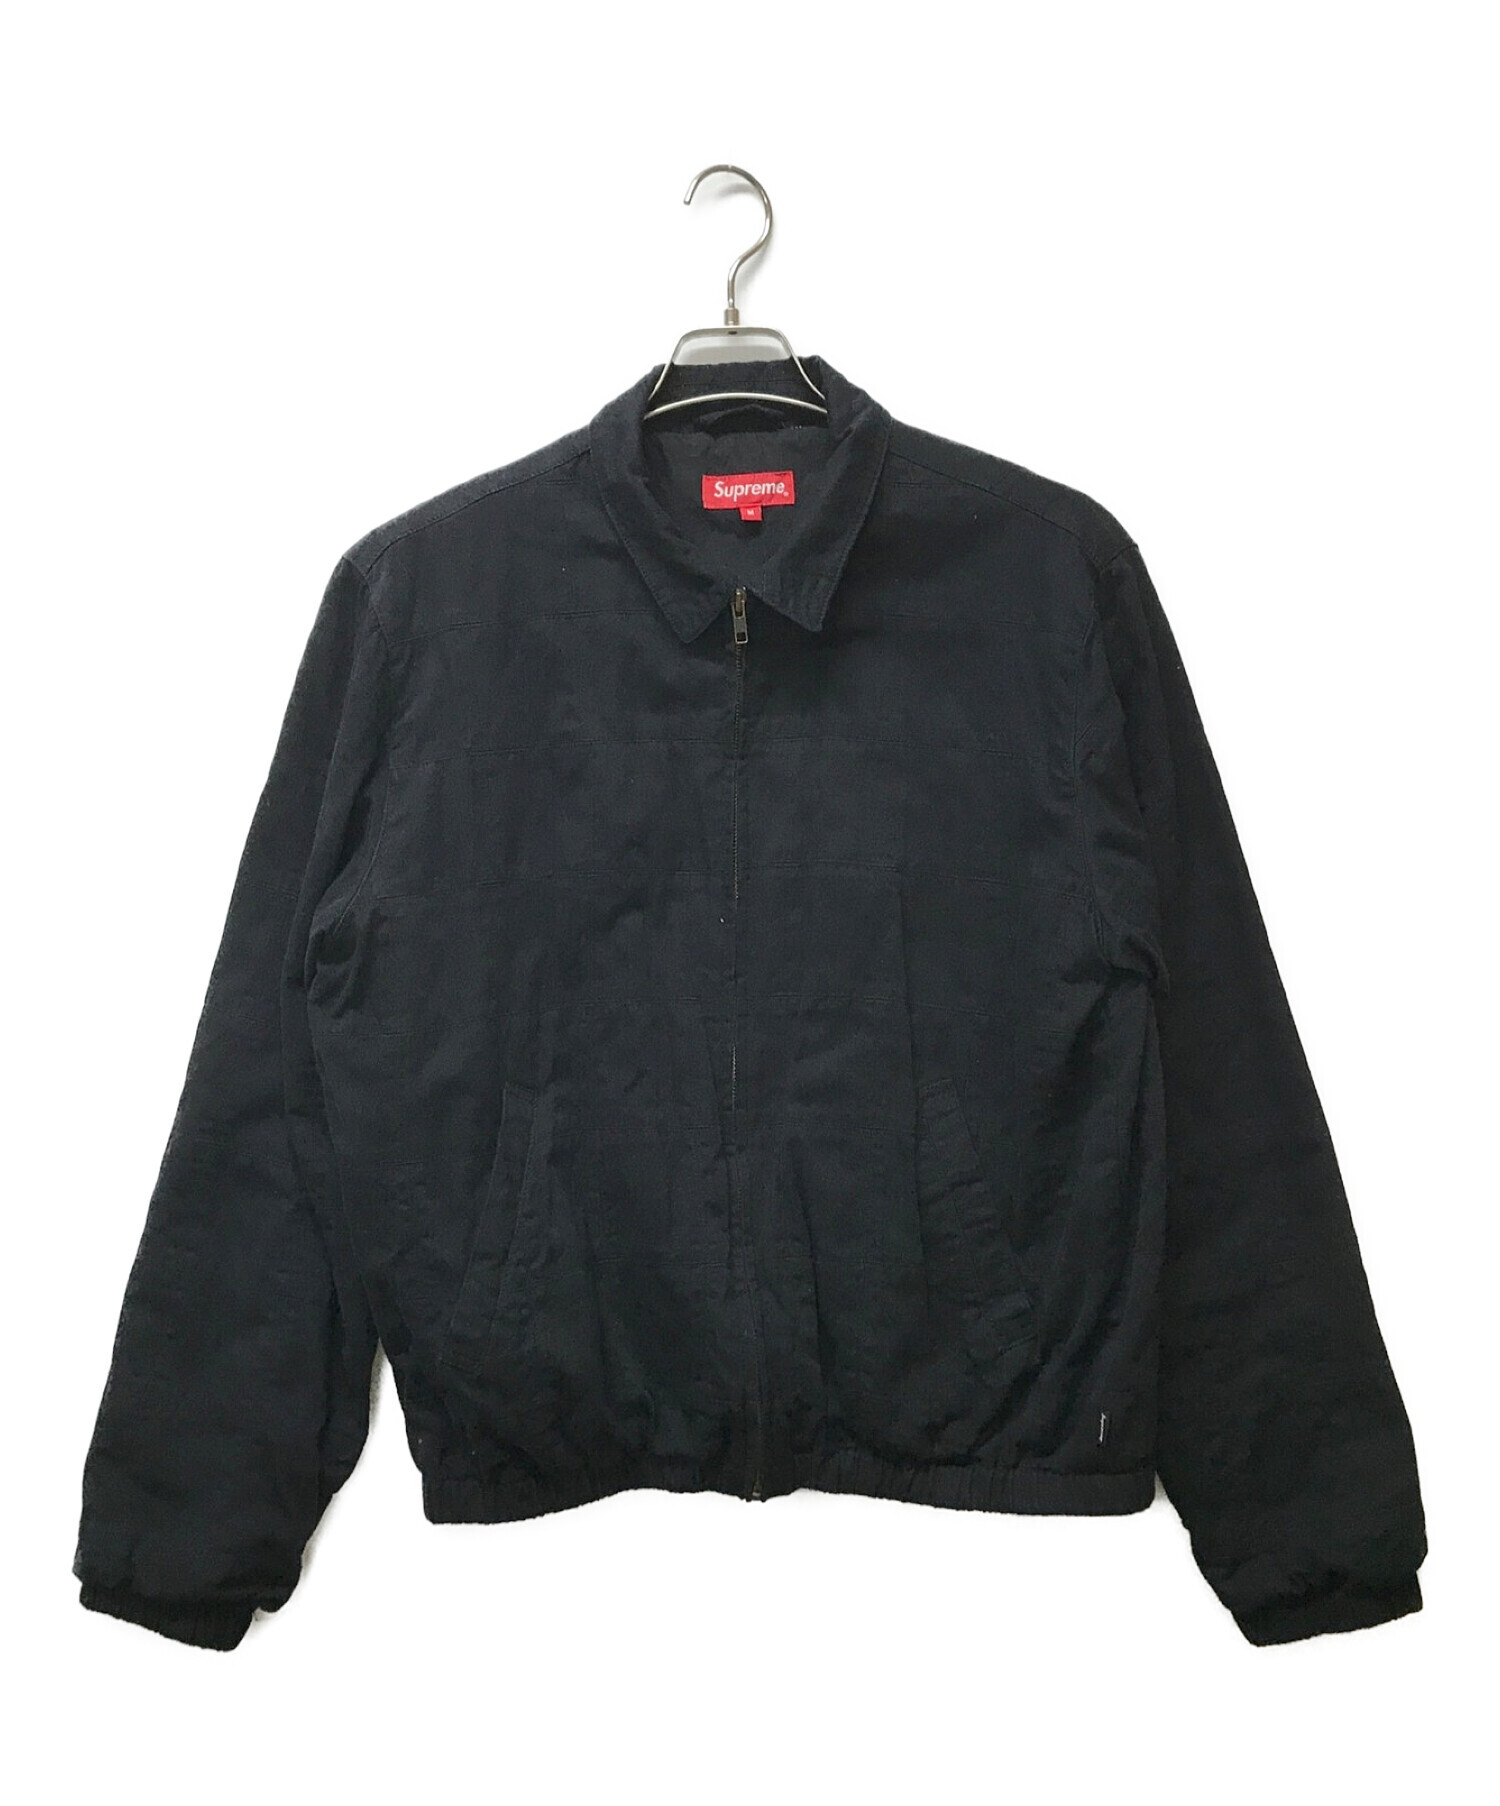 メンズ19ss Supreme Shop Jacket Black Lサイズ